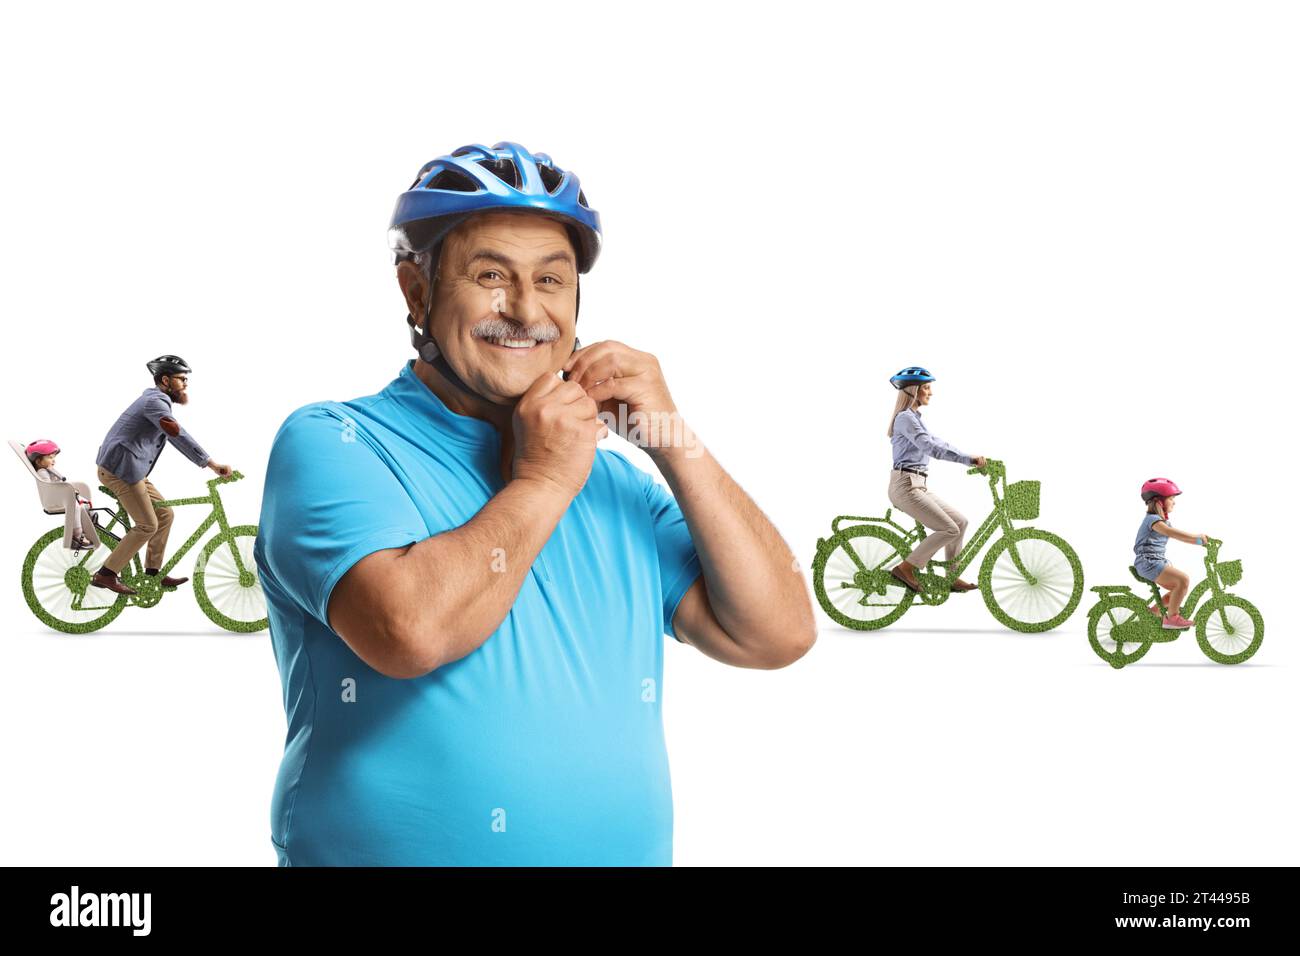 Fröhlicher reifer Mann, der einen Fahrradhelm aufsetzt und Leute, die grüne Fahrräder im Rücken fahren, isoliert auf weißem Hintergrund Stockfoto